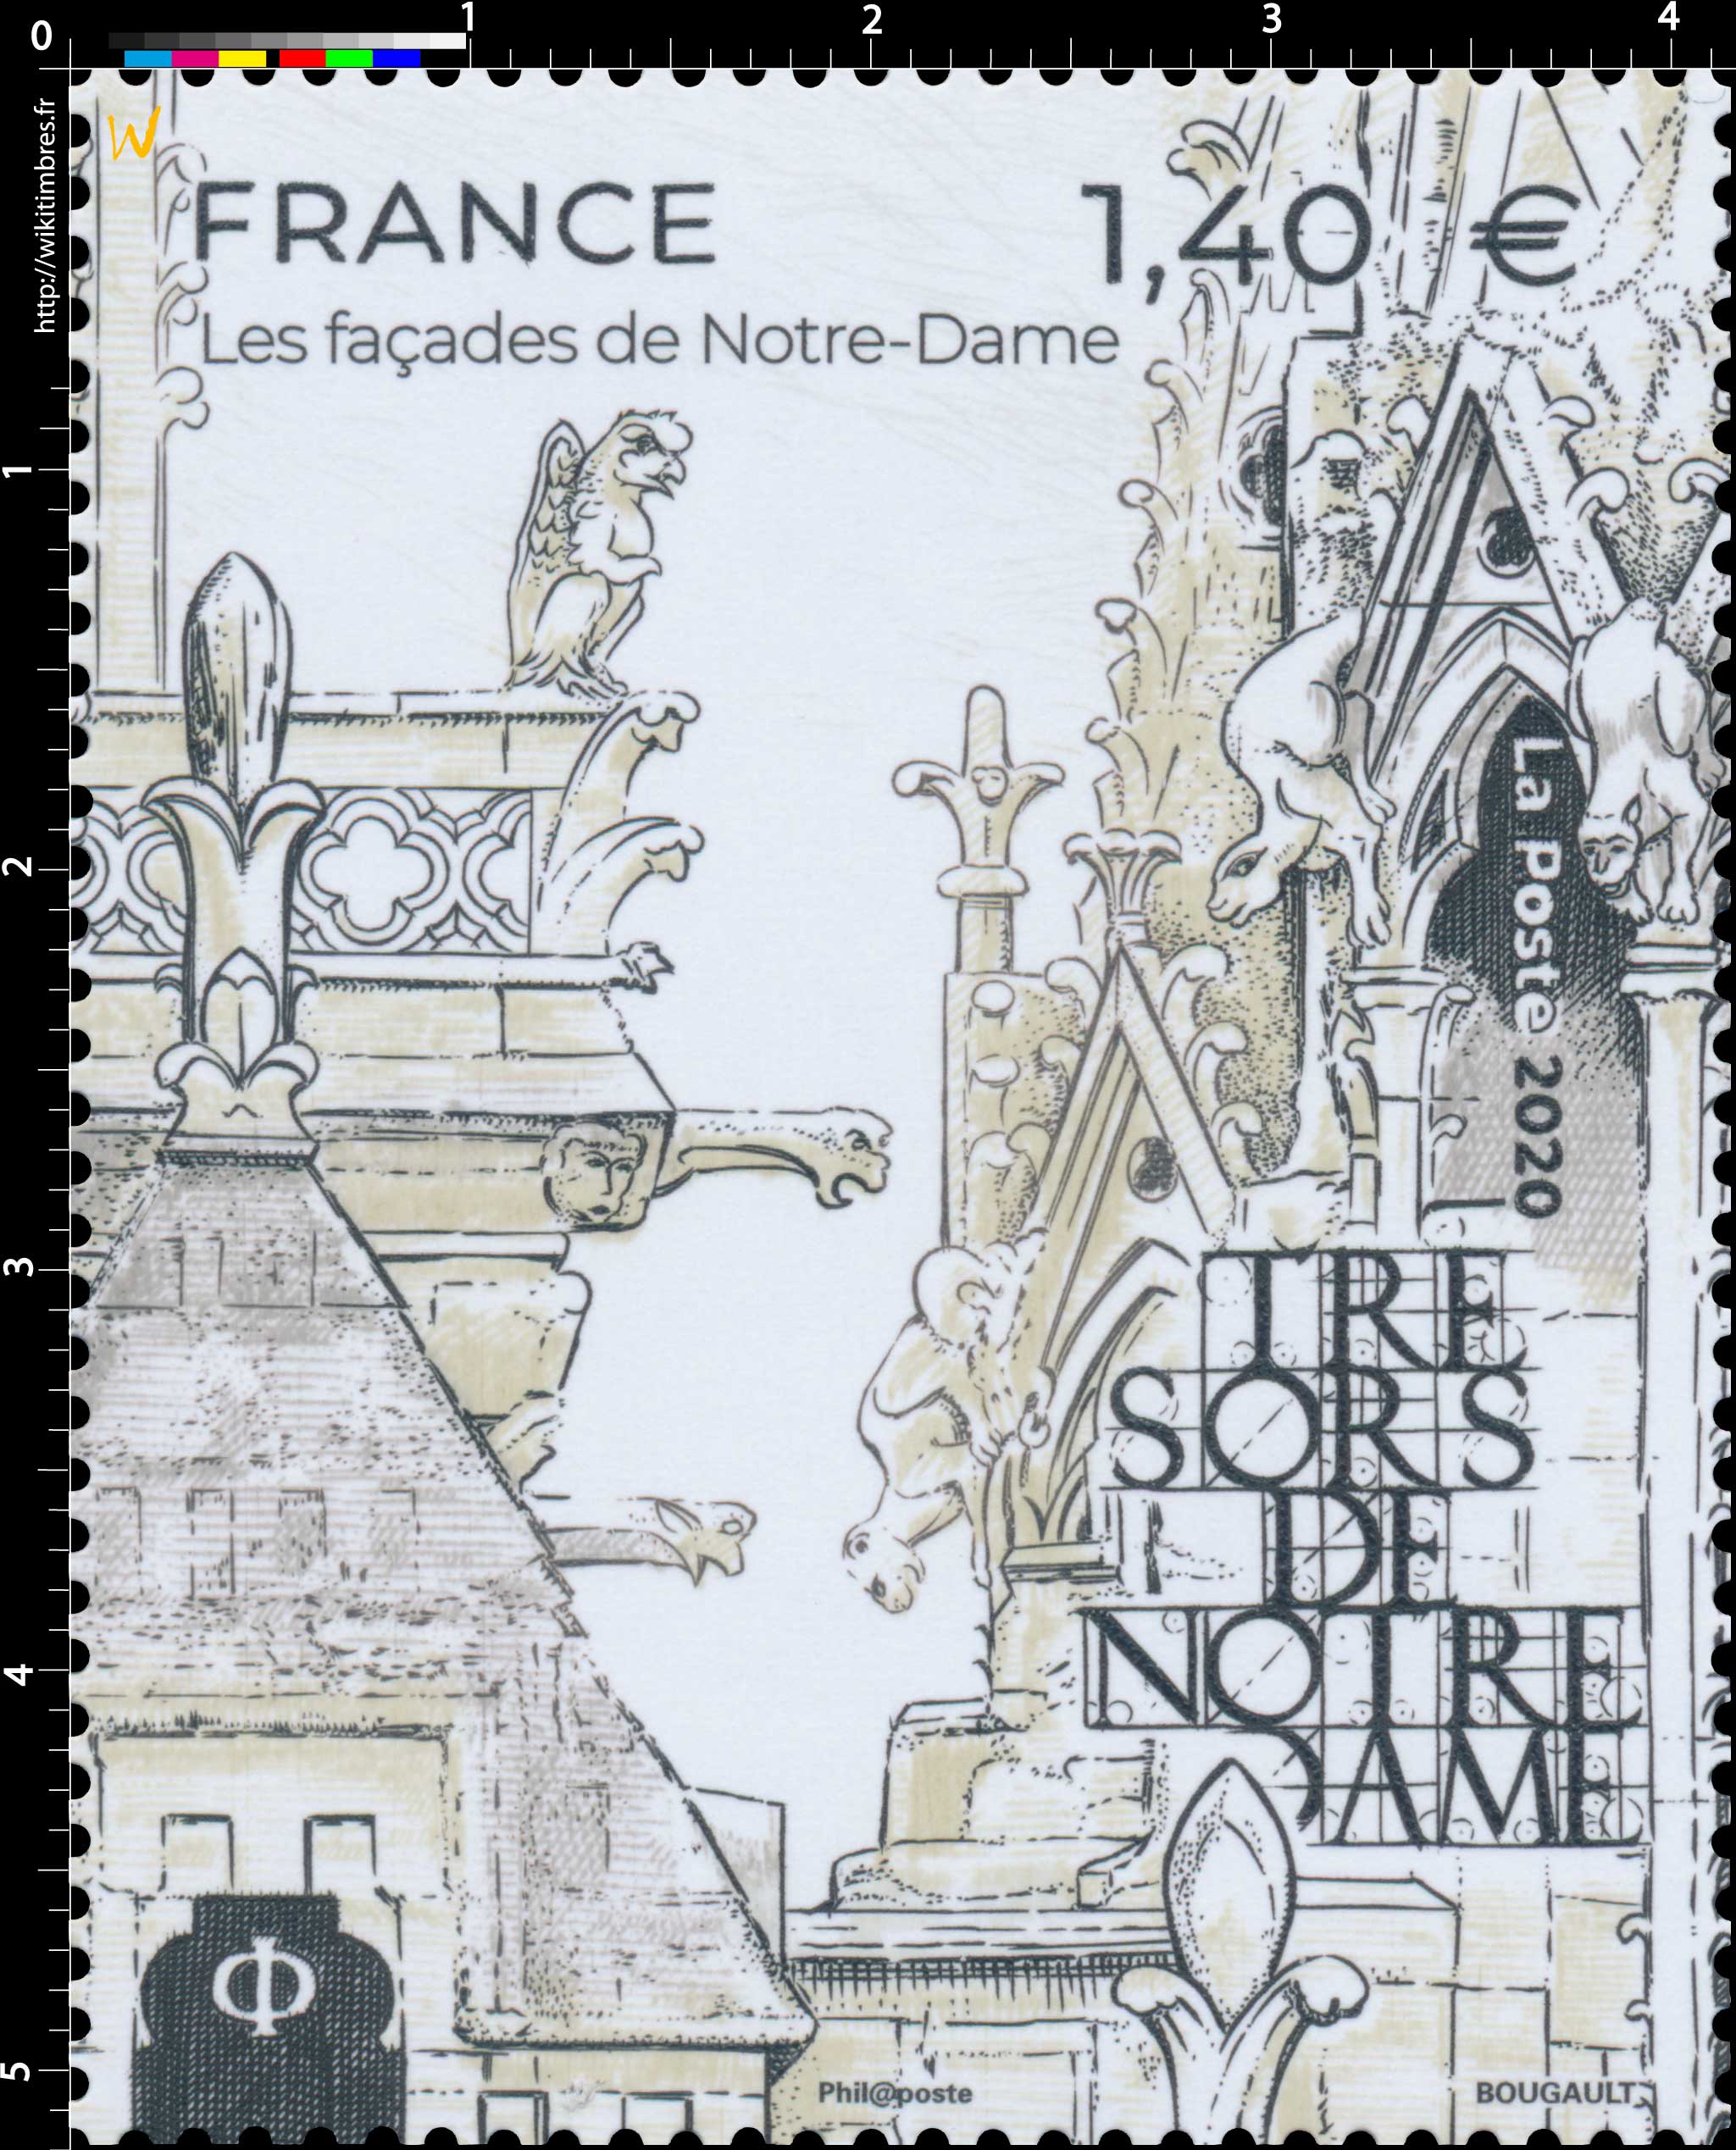 2020 Trésors de Notre-Dame - Les façades de Notre-Dame